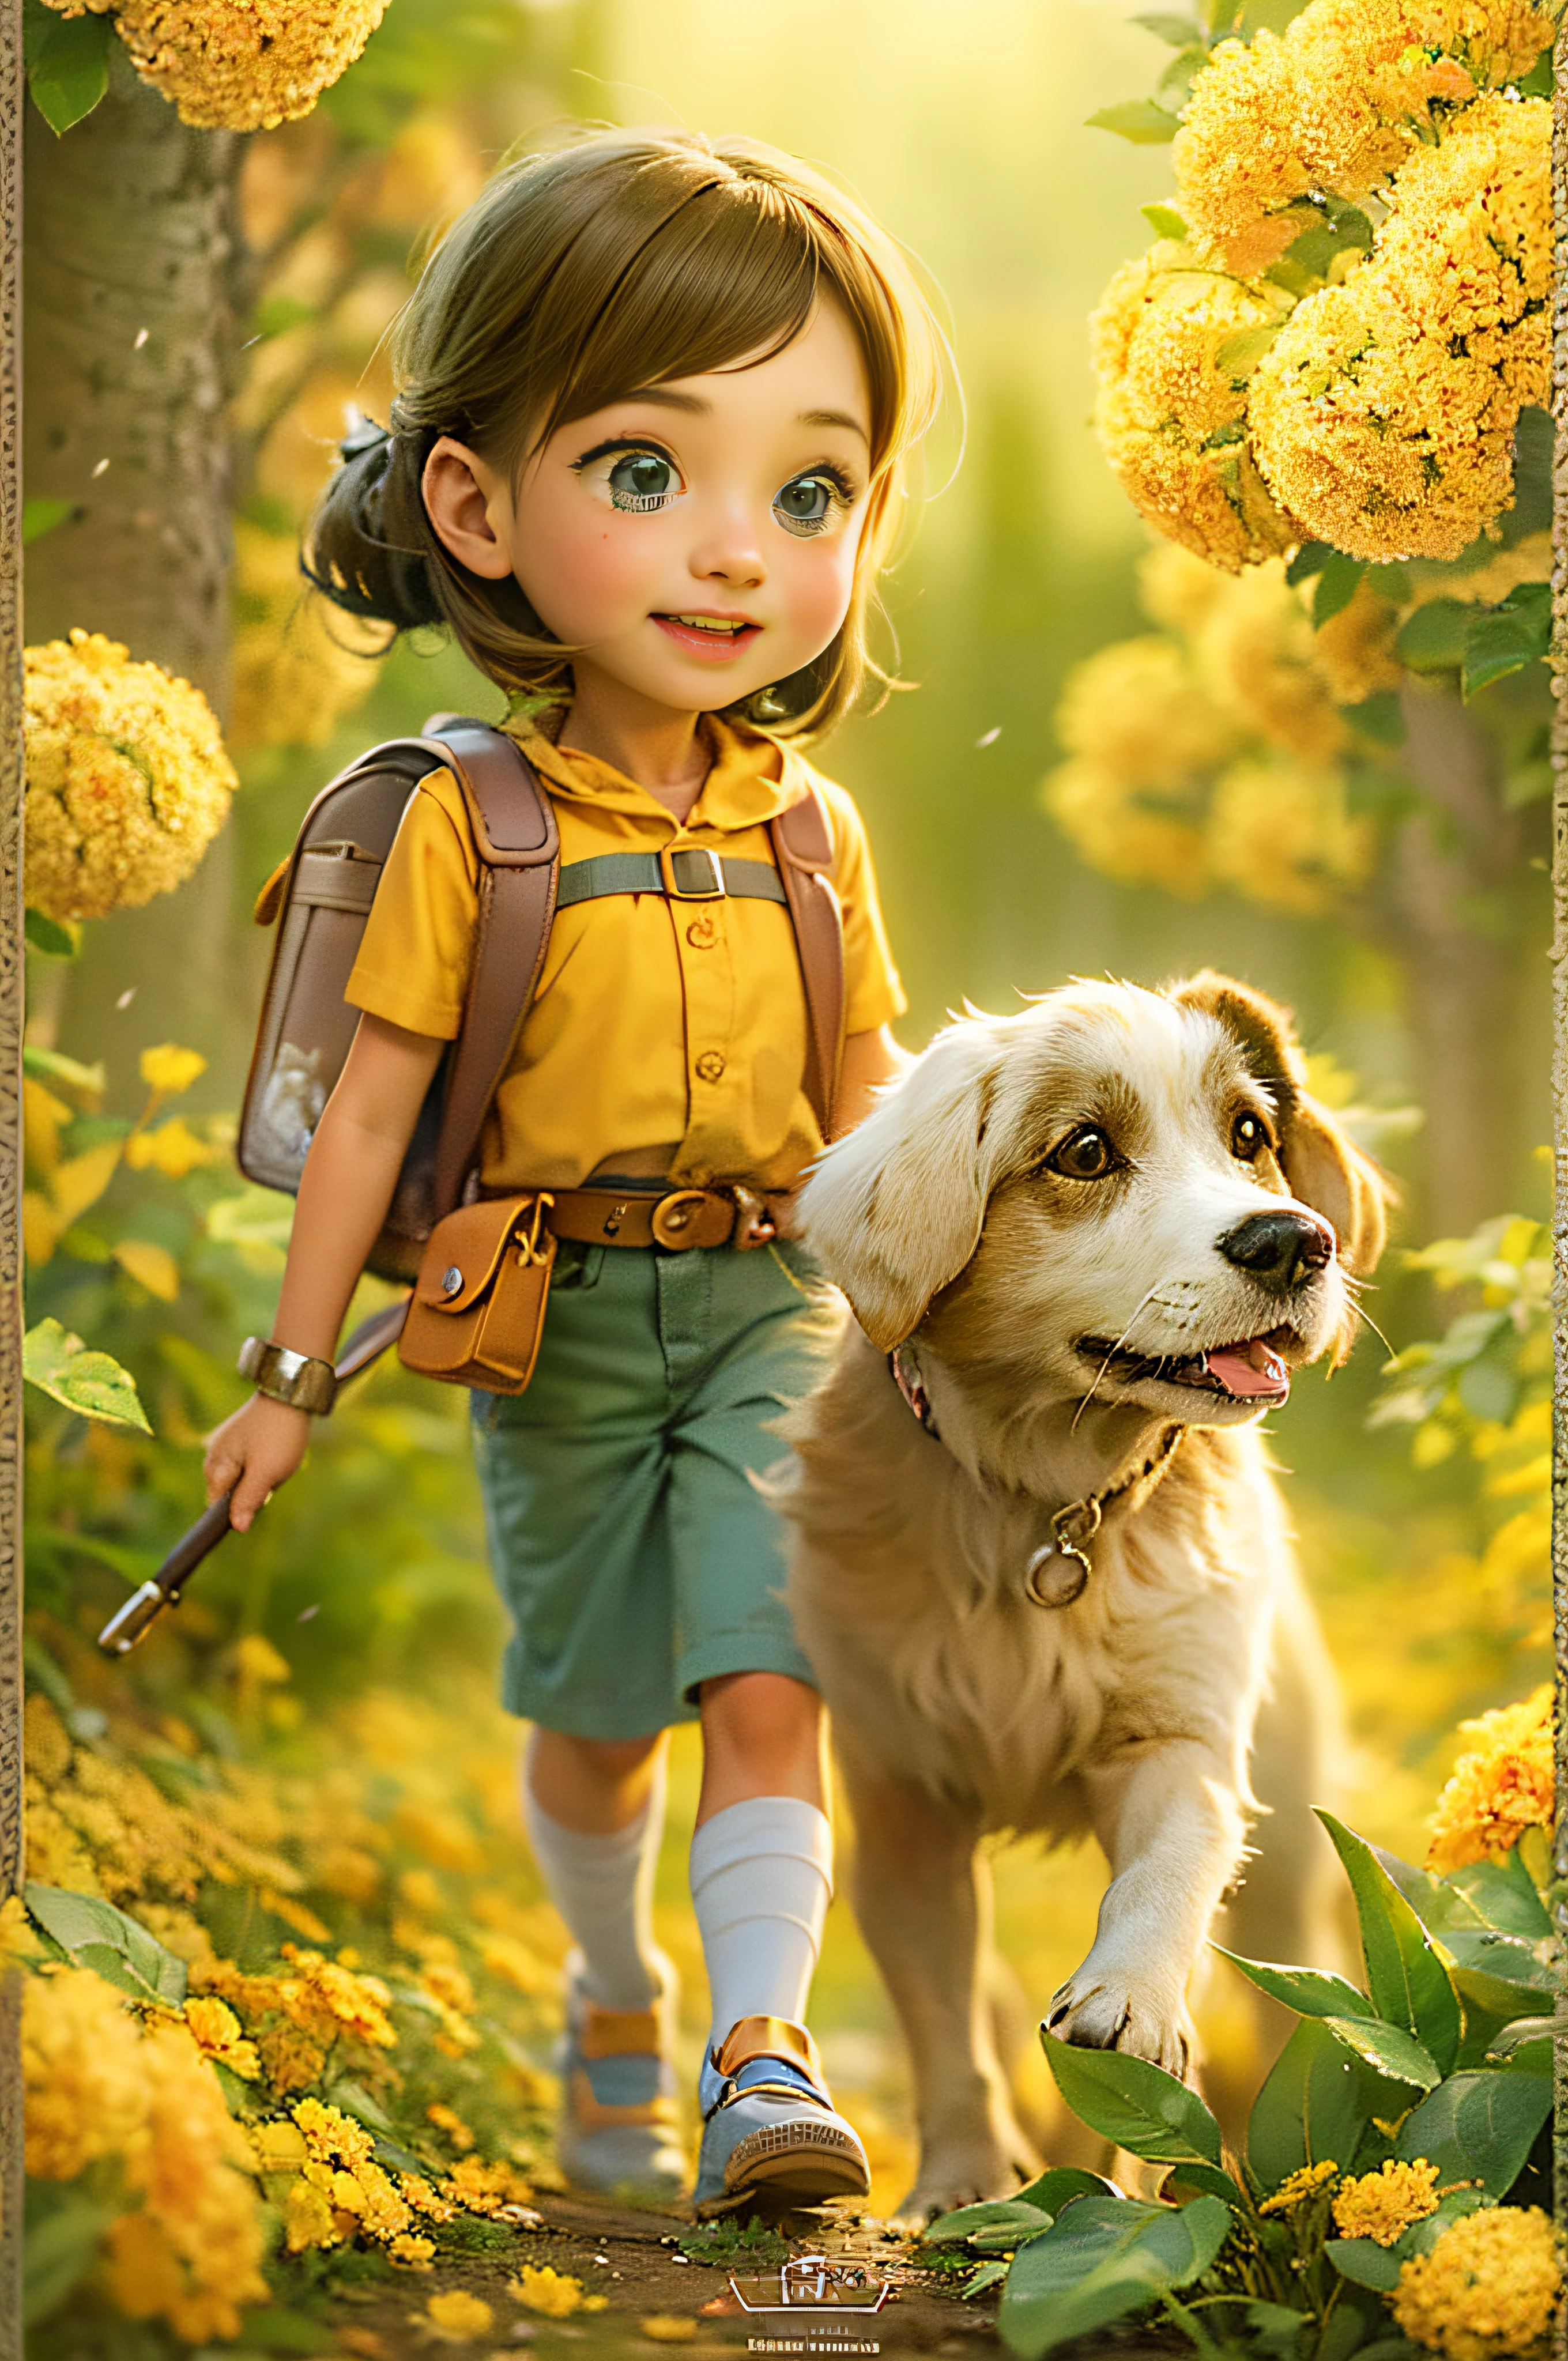 バックパックを背負ったとても魅力的な女性と彼女のかわいい犬が、美しい黄色い花と自然に囲まれた素敵な春の外出を楽しんでいます。. このイラストは、非常に詳細な顔の特徴と漫画風のビジュアルを備えた4K解像度の高精細イラストです。